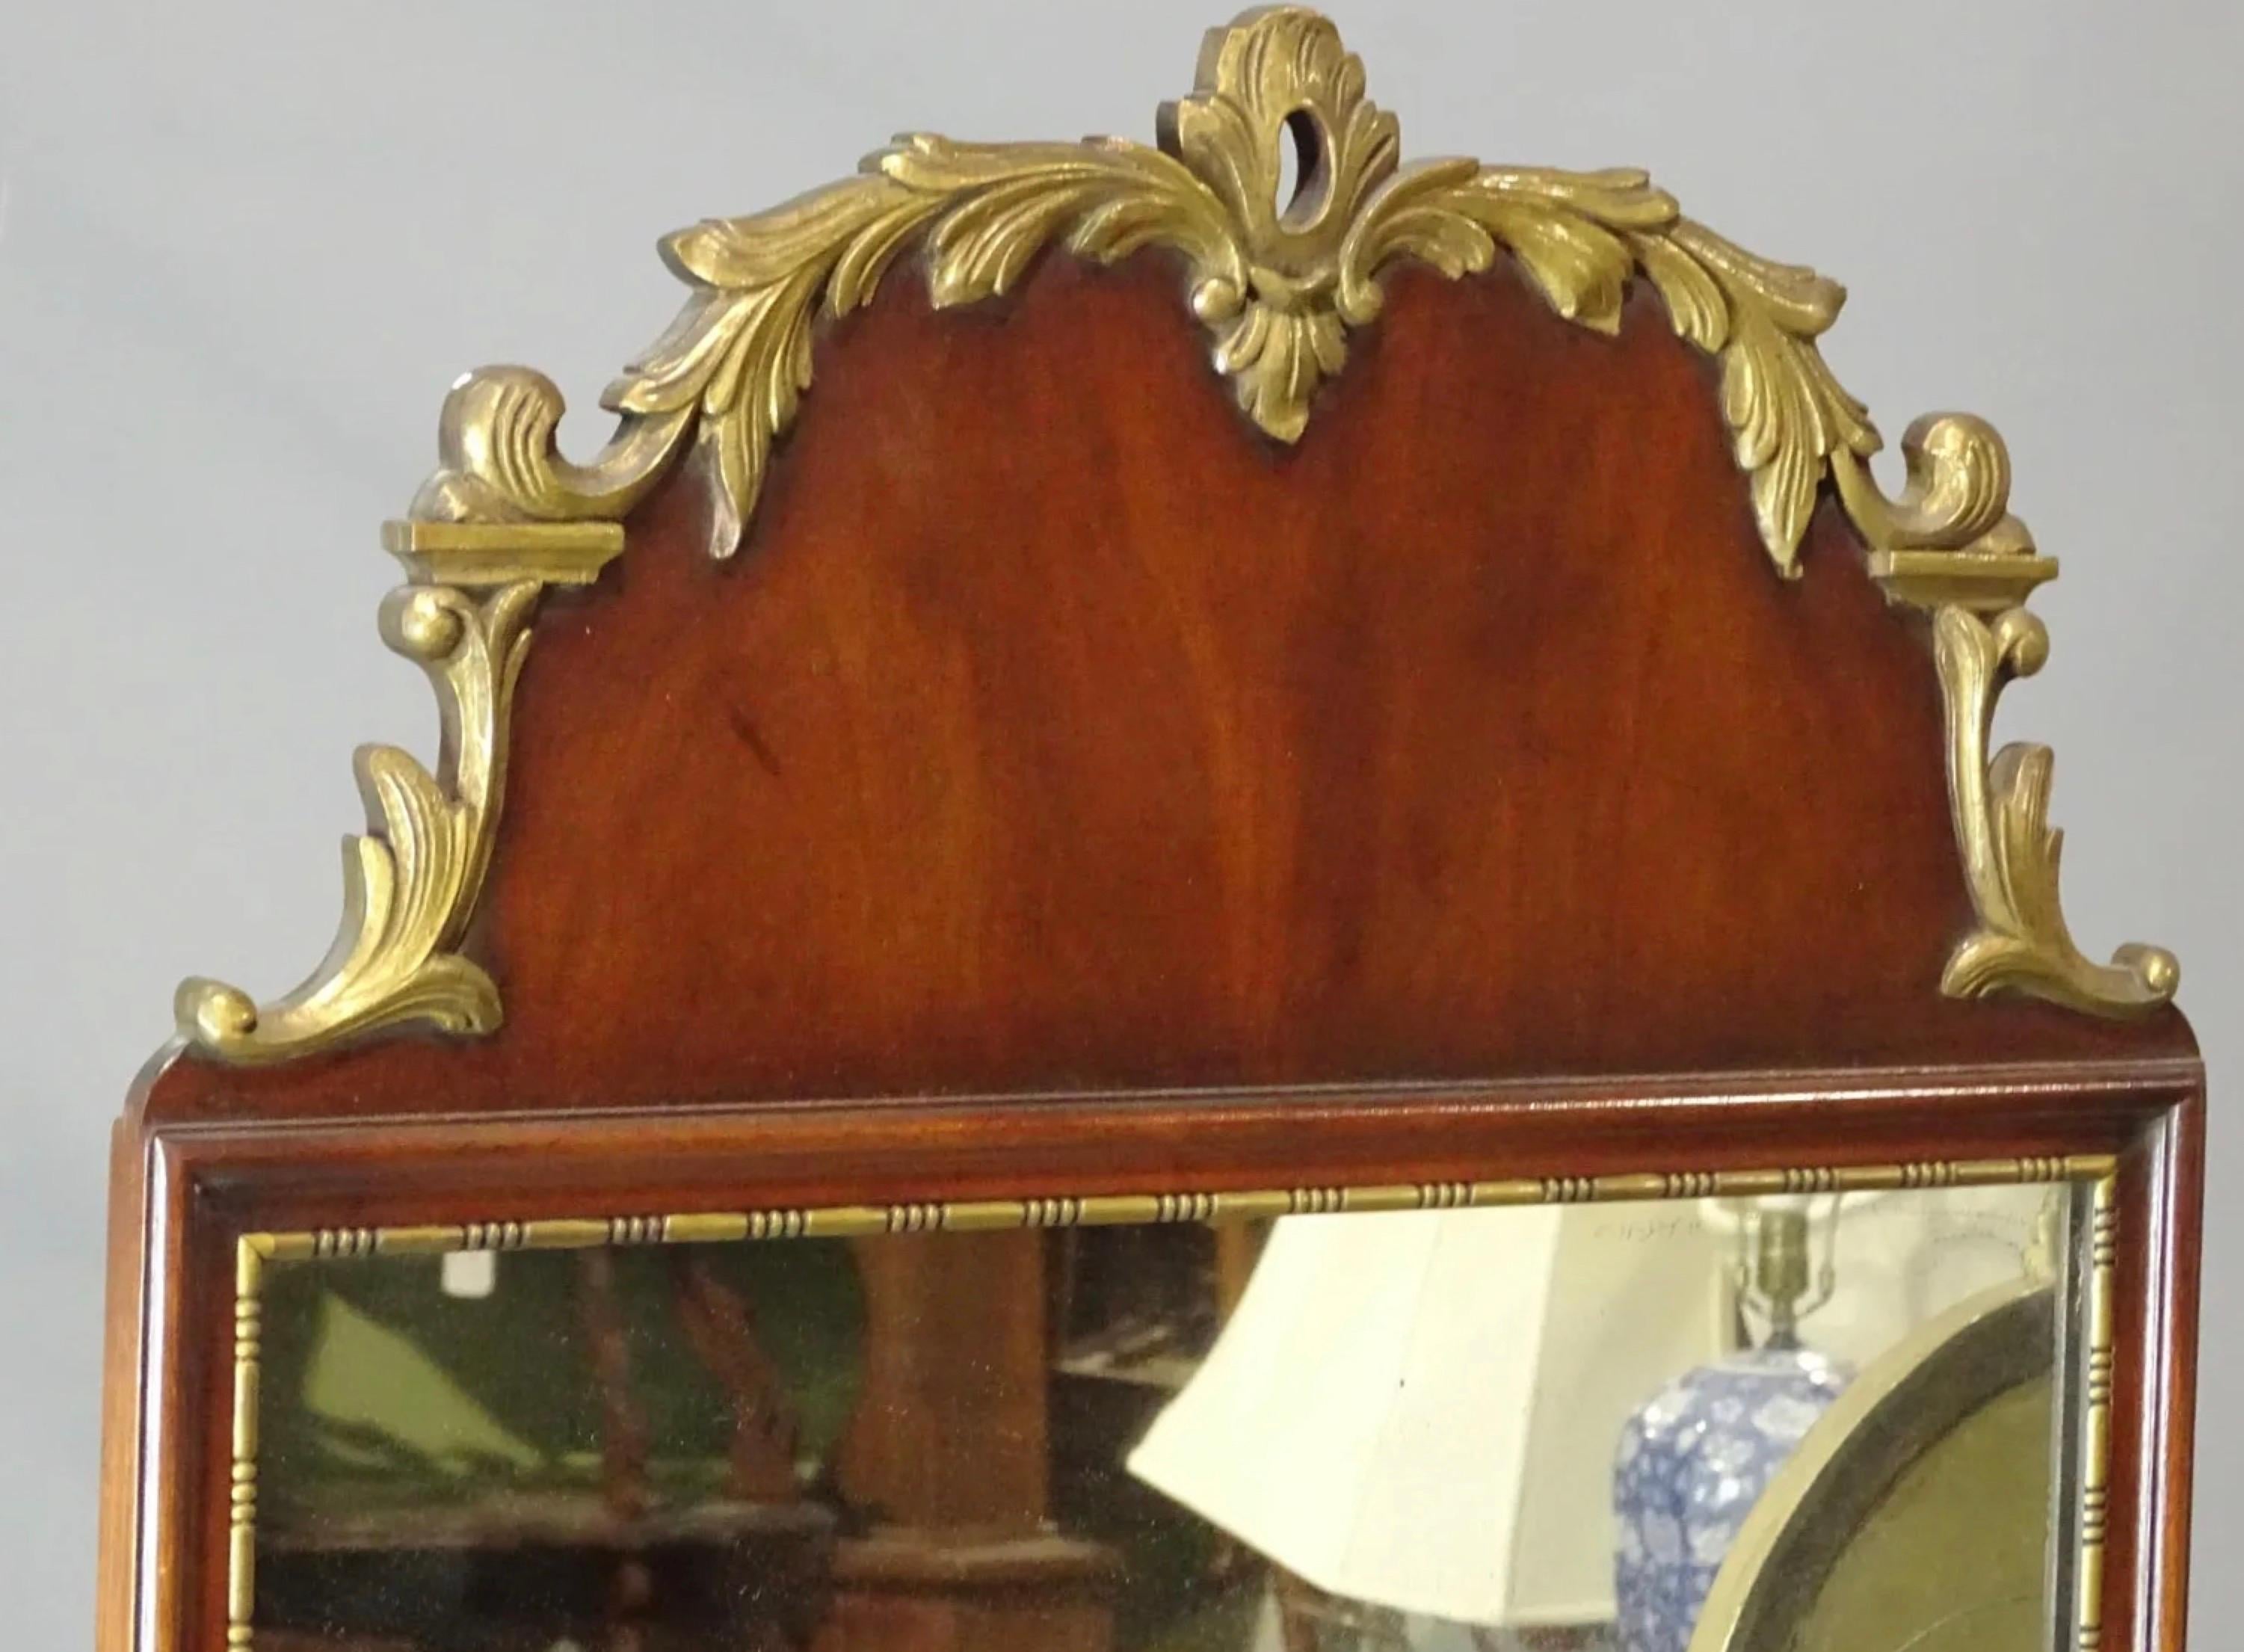 Miroir vintage de style Queen Anne en acajou avec décoration sculptée et dorée au sommet et bordure dorée perlée autour du miroir. 
Termes de recherche : miroir de style Régence, miroir de style géorgien, 
Miroirs cheminée.
Miroirs de pilier et